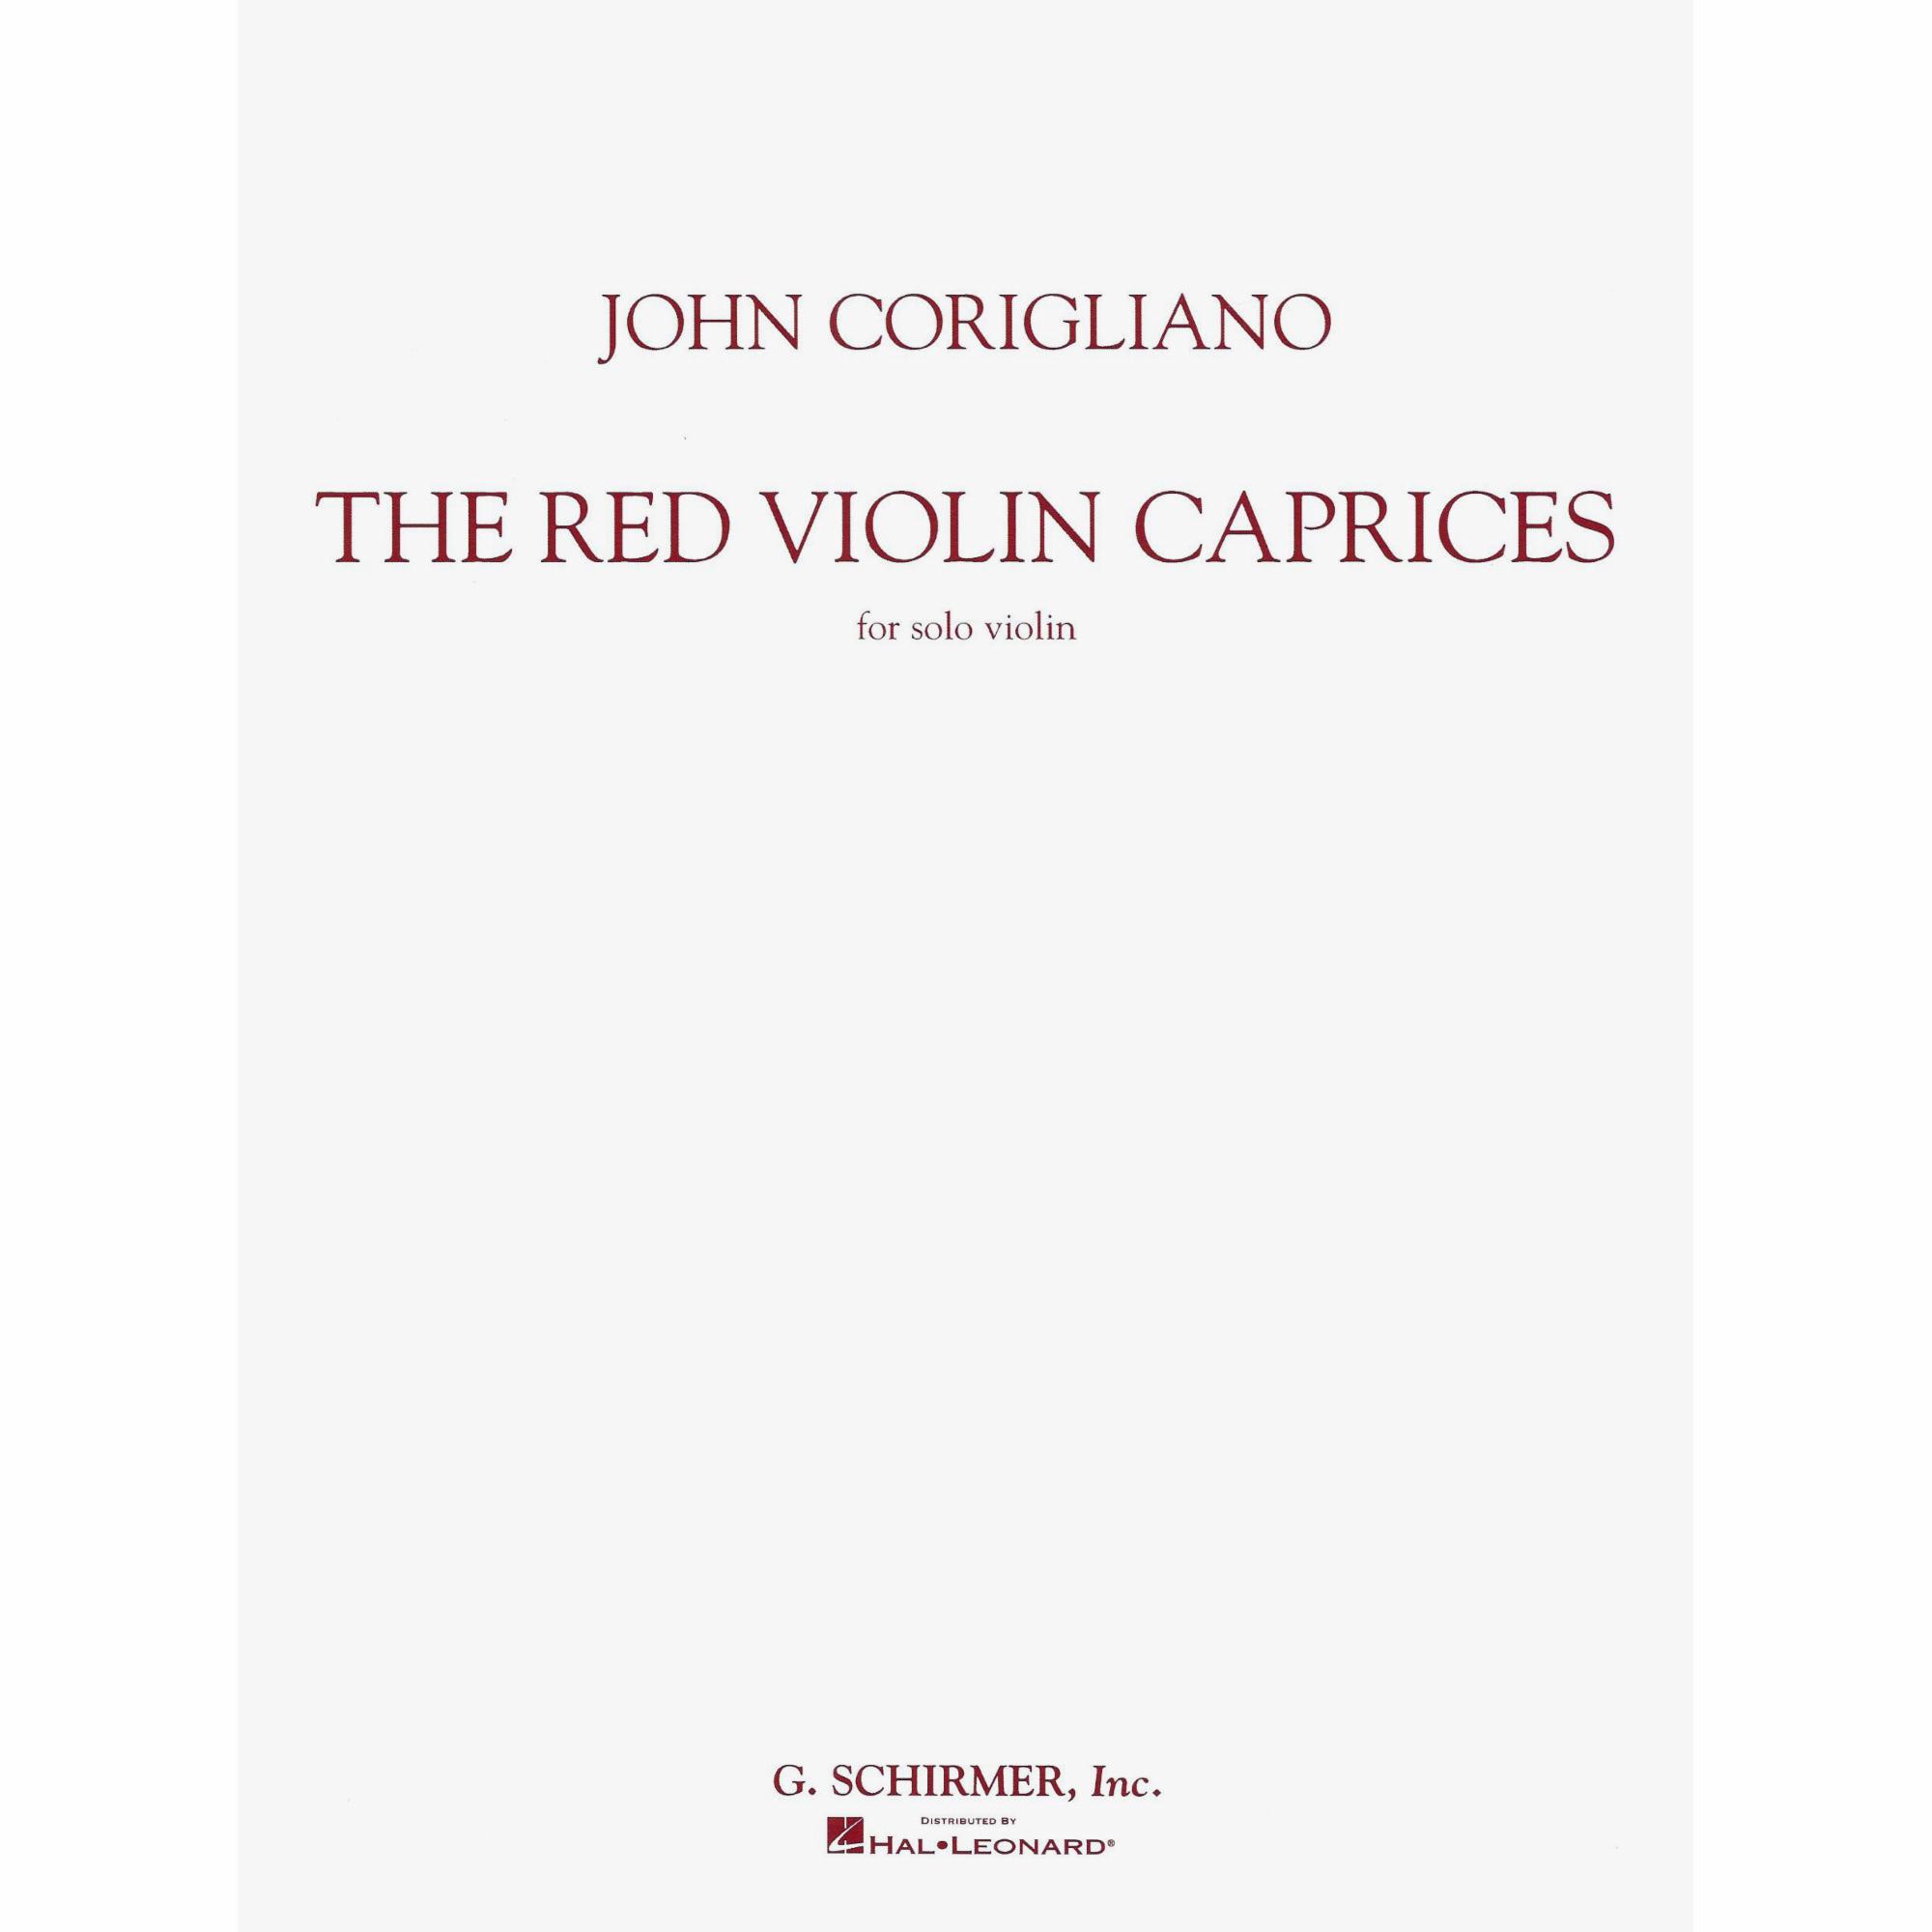 Corigliano -- The Red Violin Caprices for Solo Violin